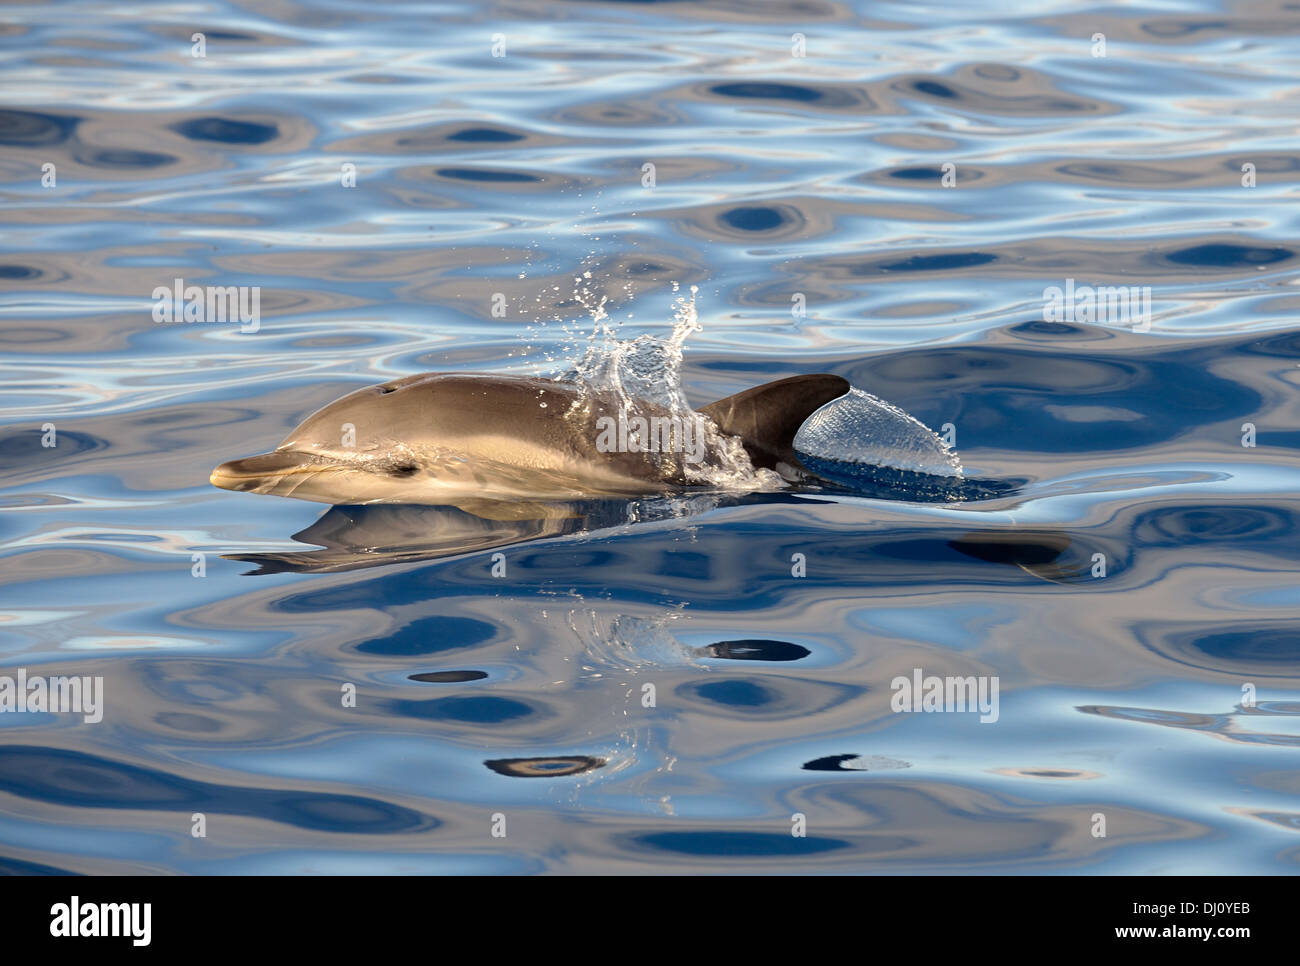 À bec court Dauphin commun (Delphinus delphis) surfacing, les Açores, juin Banque D'Images